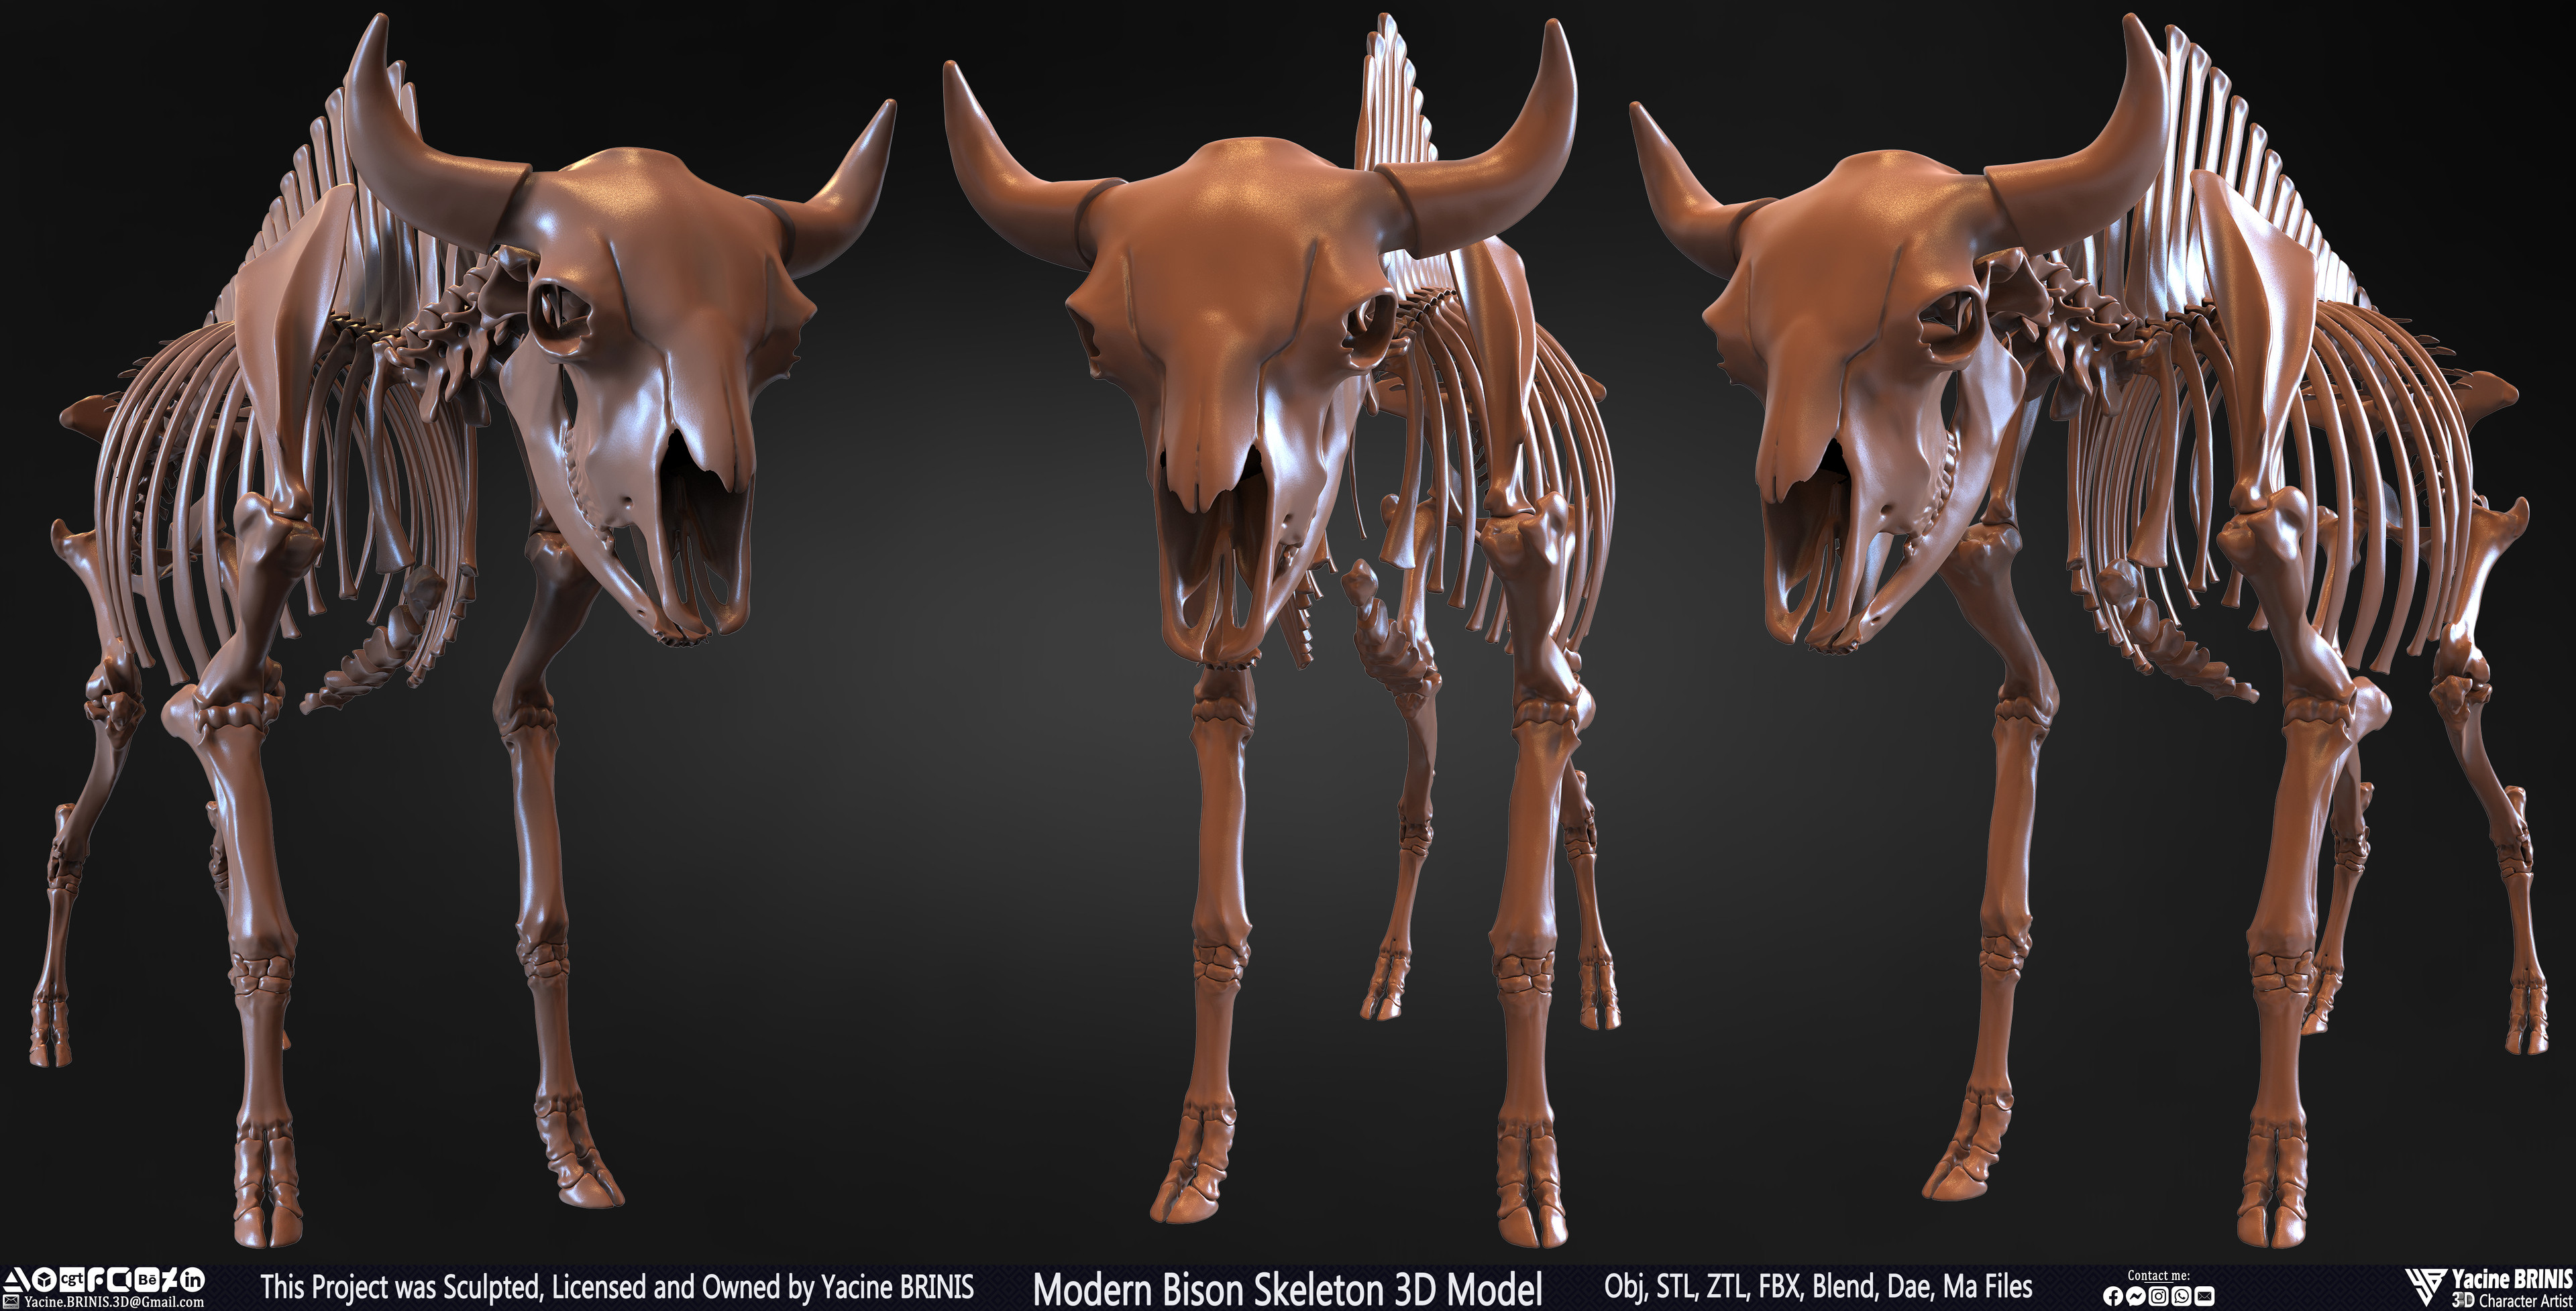 Modern Bison Skeleton 3D Model Sculpted by Yacine BRINIS Set 001